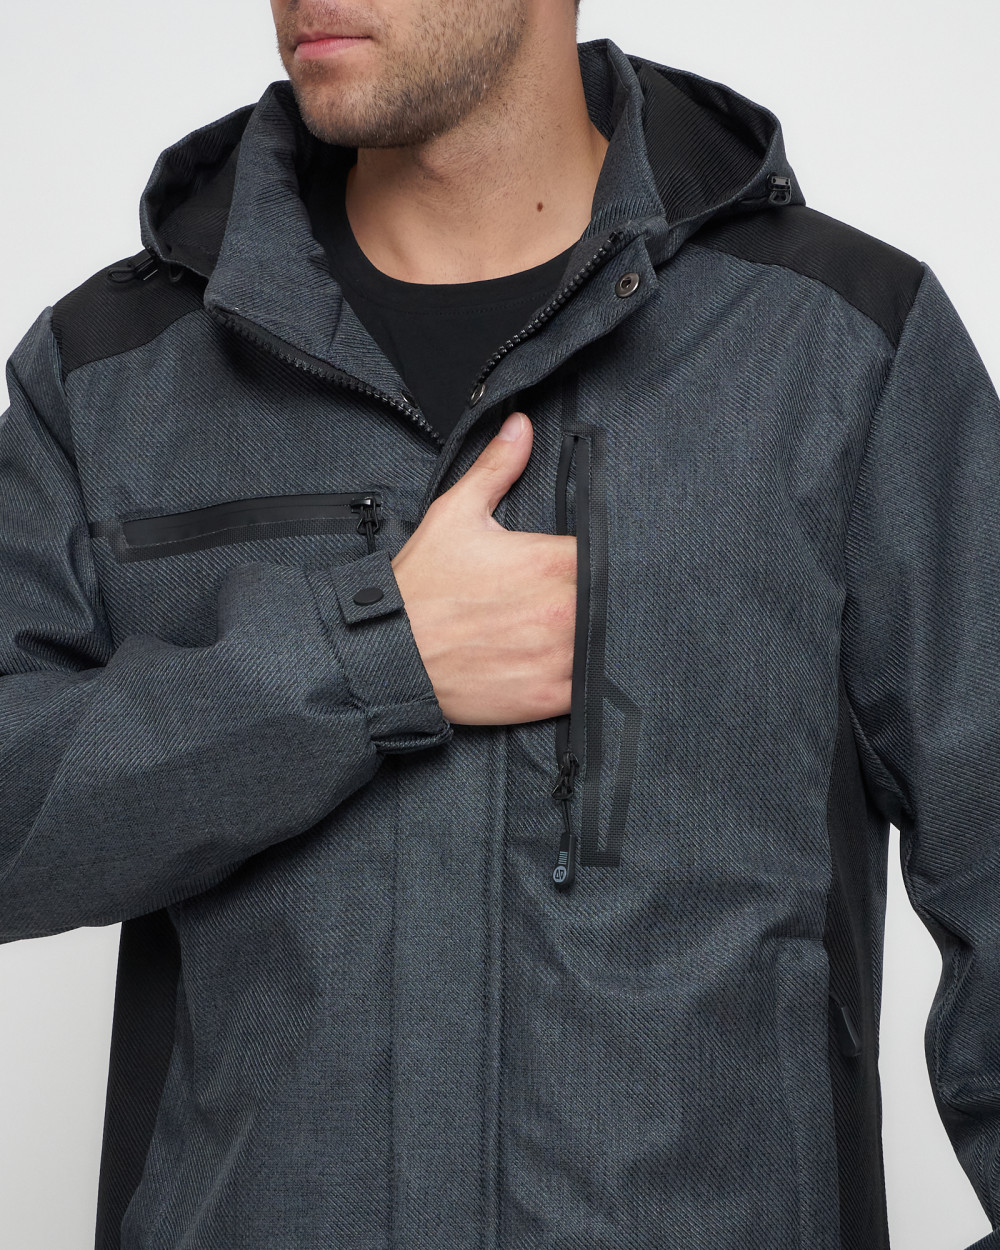 Купить куртку мужскую спортивную весеннюю оптом от производителя недорого в Москве 6652TC 1